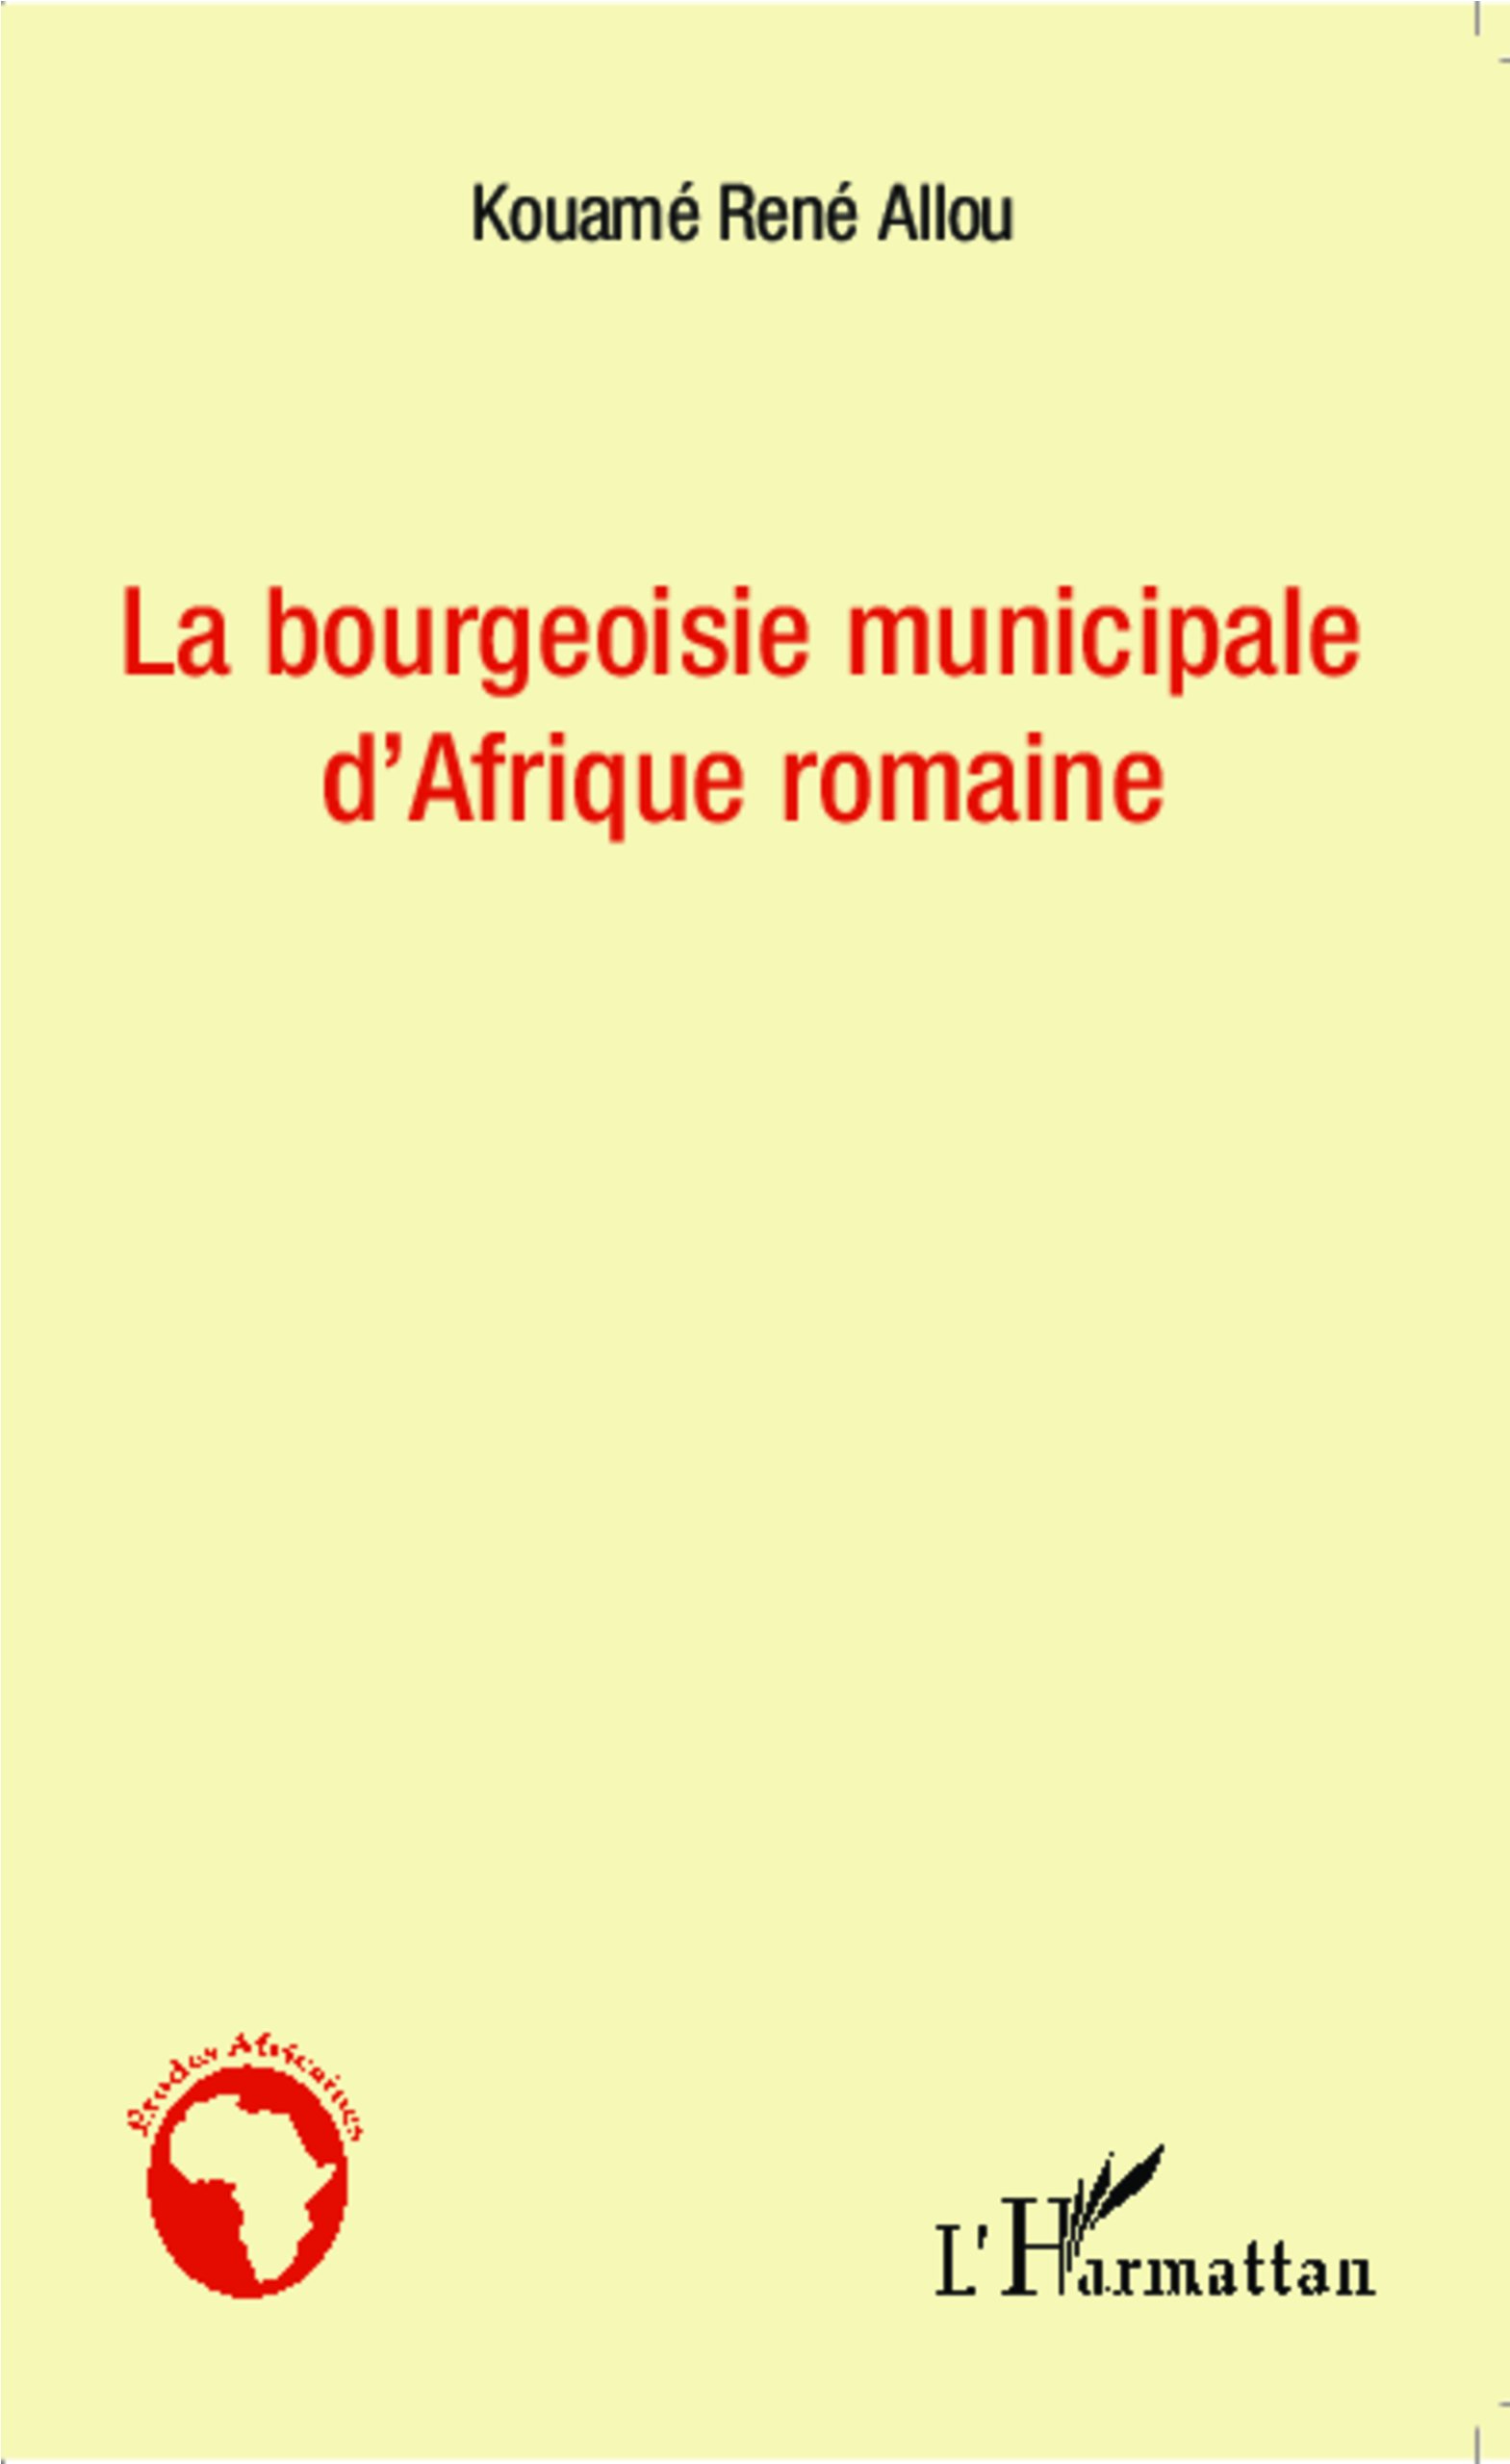 La bourgeoisie municipale d'Afrique romaine, 2013, 112 p.